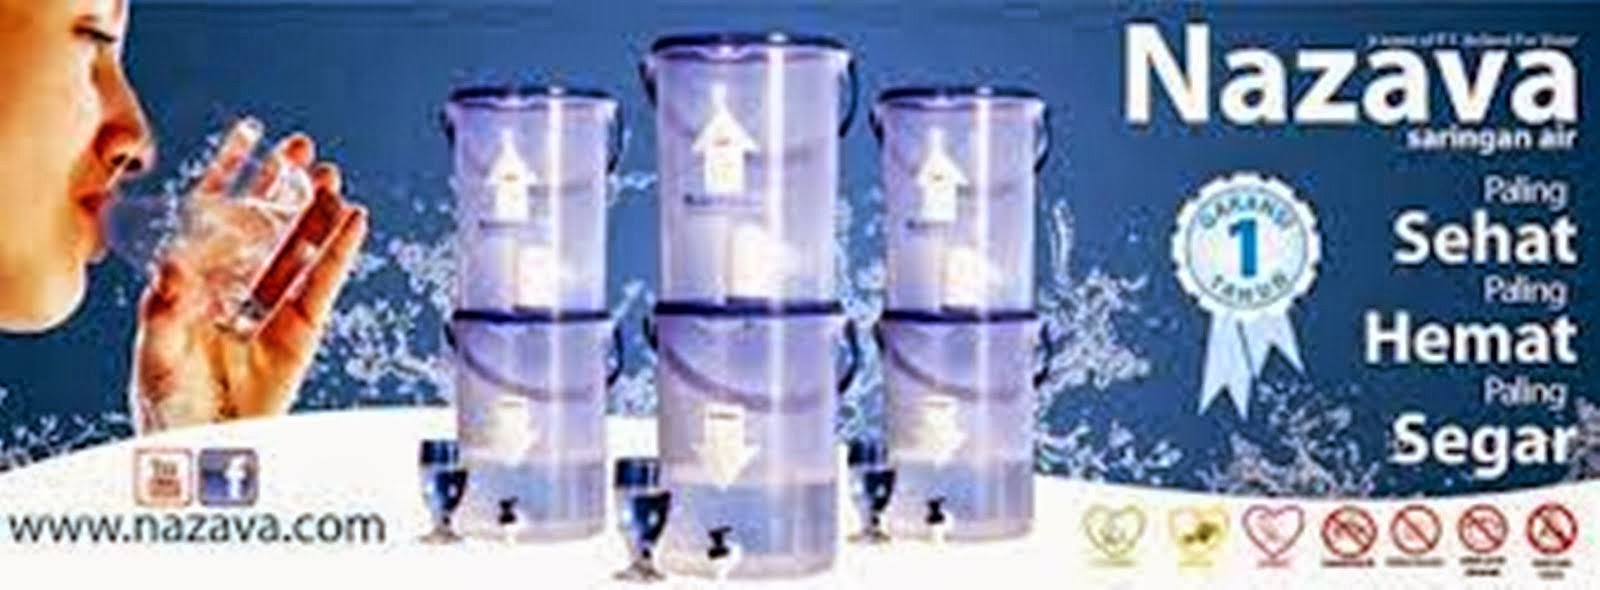 Filter Air Nazava, Menyaring Air Mentah Menjadi Siap Minum